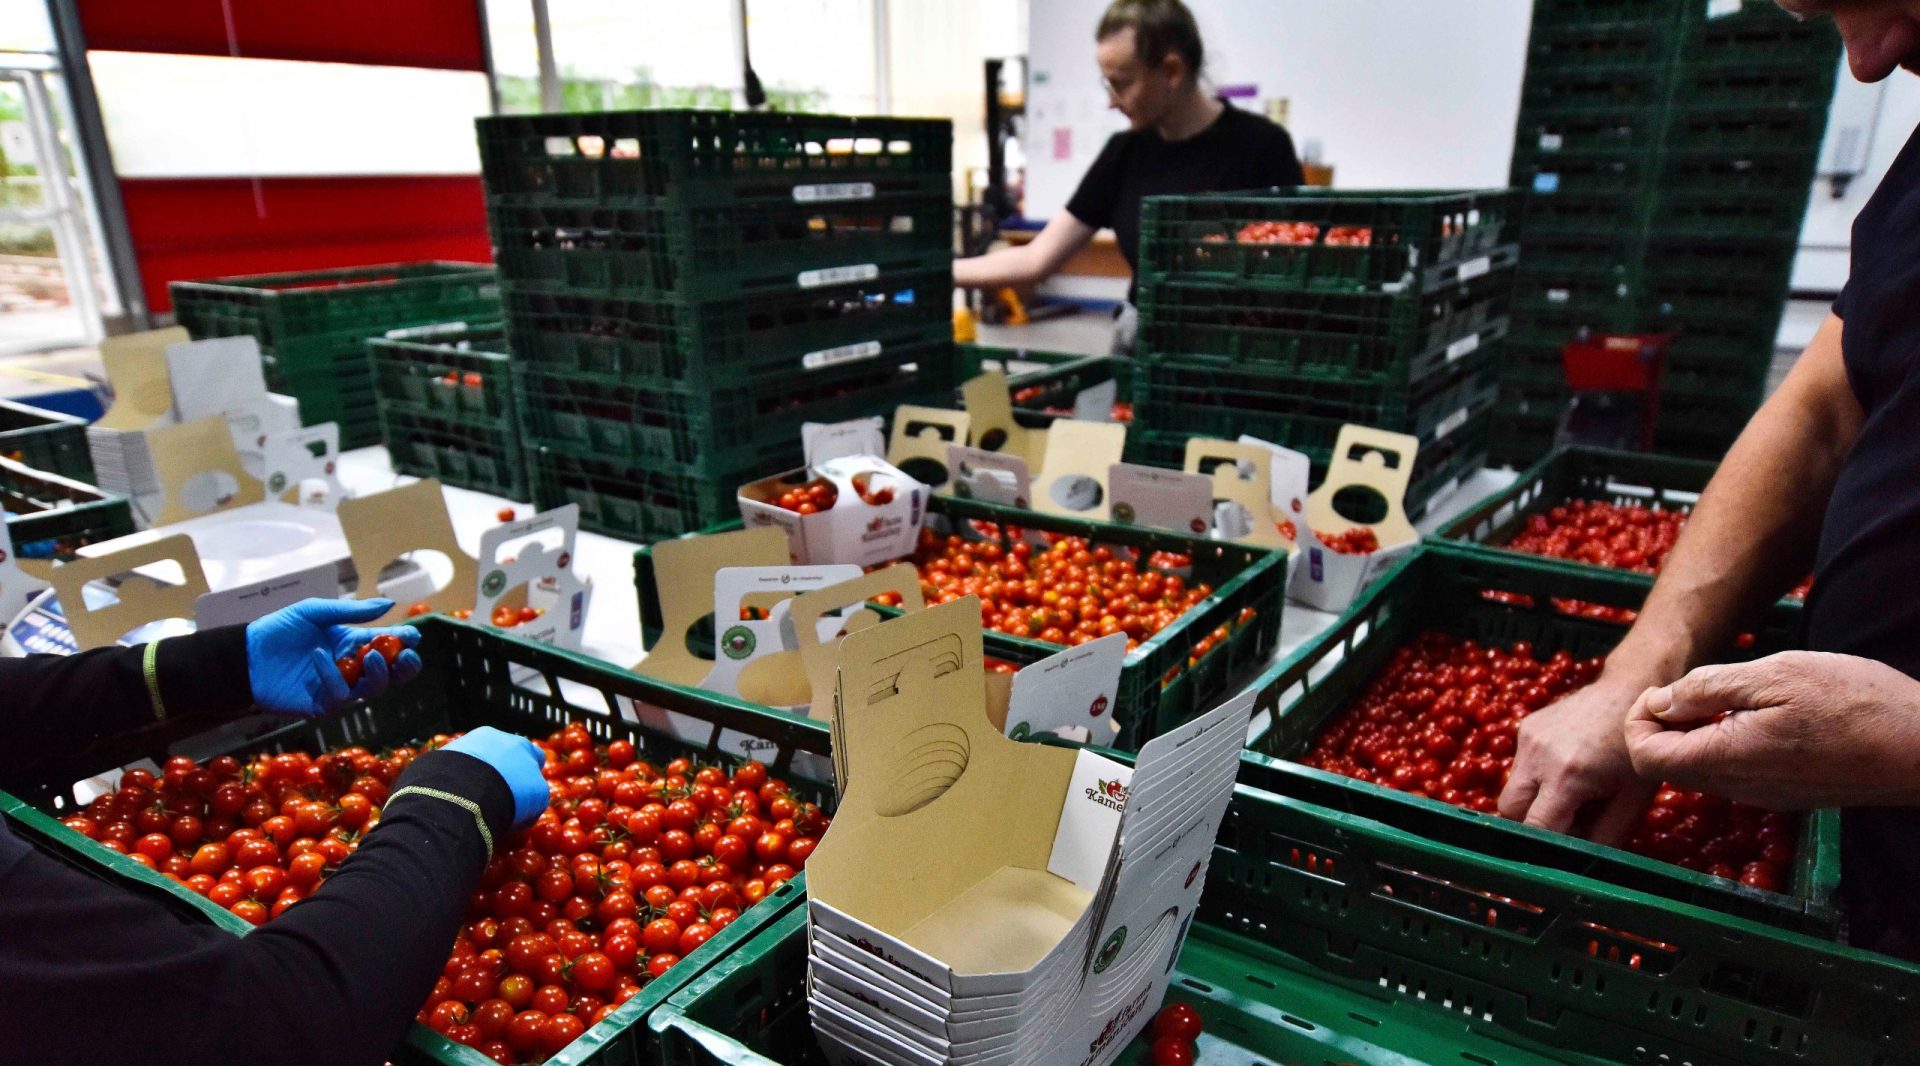 Terajšok.sk: Kúpili by ste rajčiny za 20 eur?